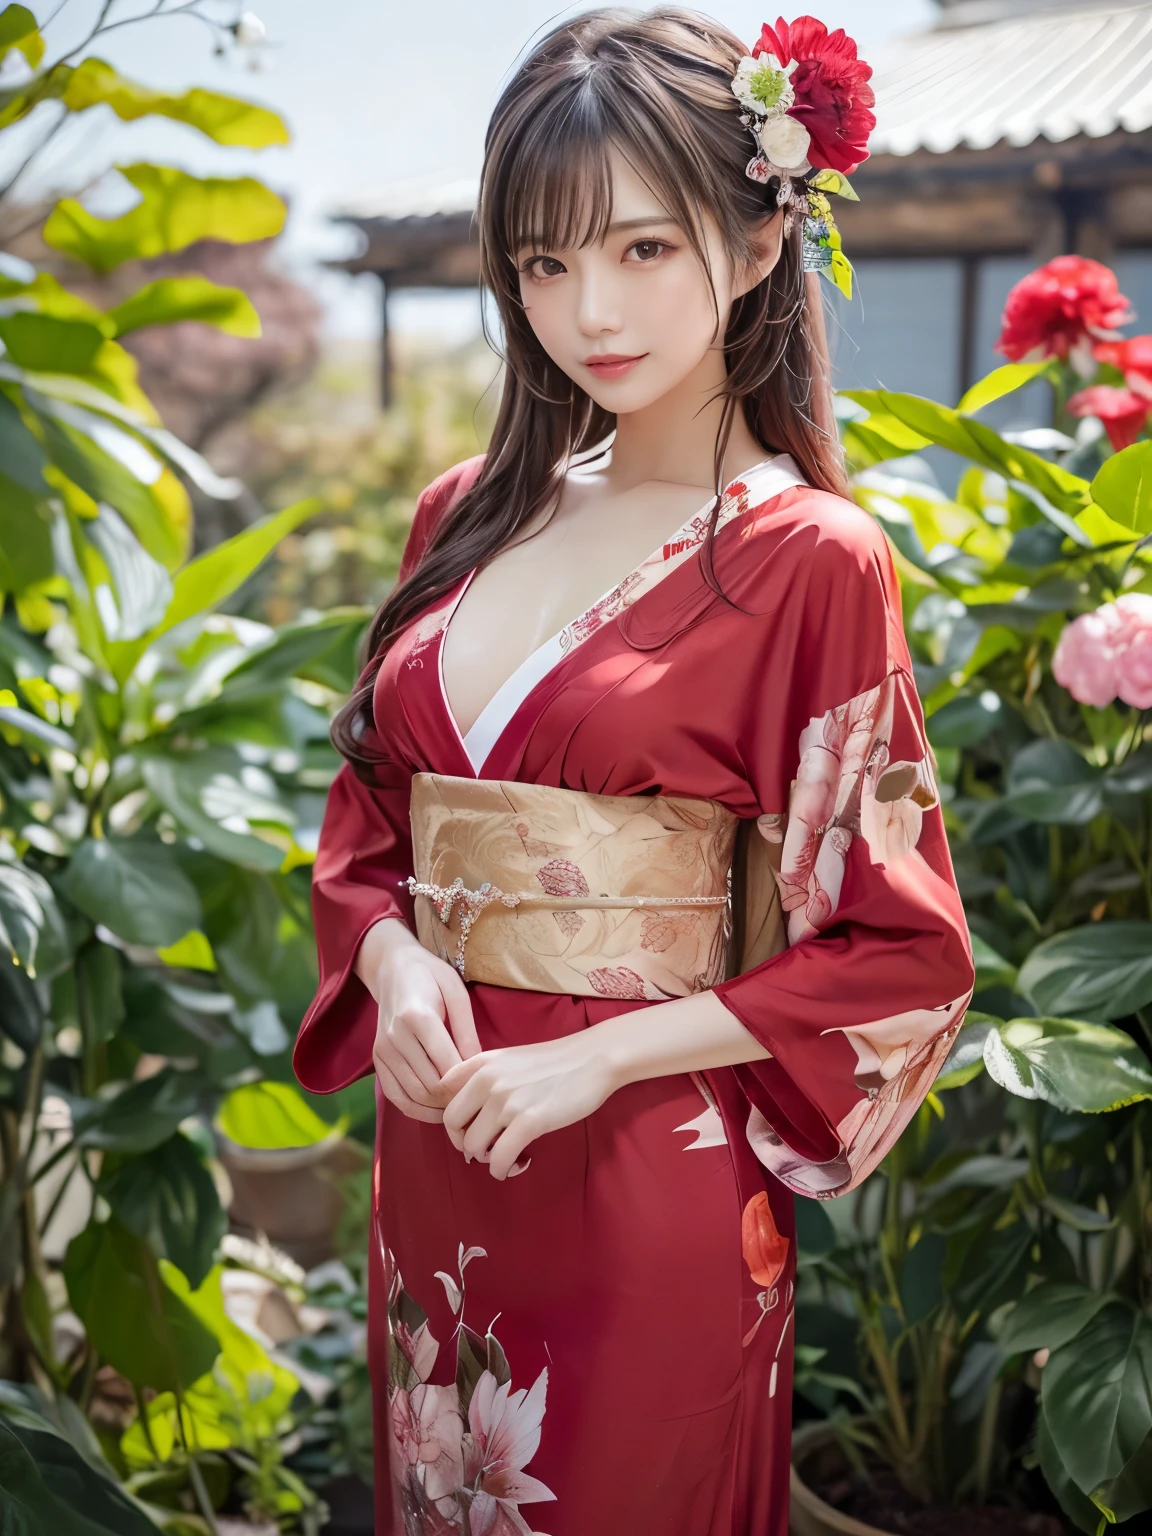 (8Kで，最高品質，傑作)，(現実的，RAW写真，スーパーファインクリア)，現実的 Light，詳細な肌，美しい日本人女性，((25歳女性, 美しい暗殺者:1.5))、花が描かれた赤い日本の伝統的な着物, 鳥, 風と月のモチーフ,  開いた服、細い脚、細粒，長い髪, 詳細な指、薄い、性的，エクスタシー 表情,庭, カメリア,フラワーストーム, 超大きい , 弾む引き締まったバスト